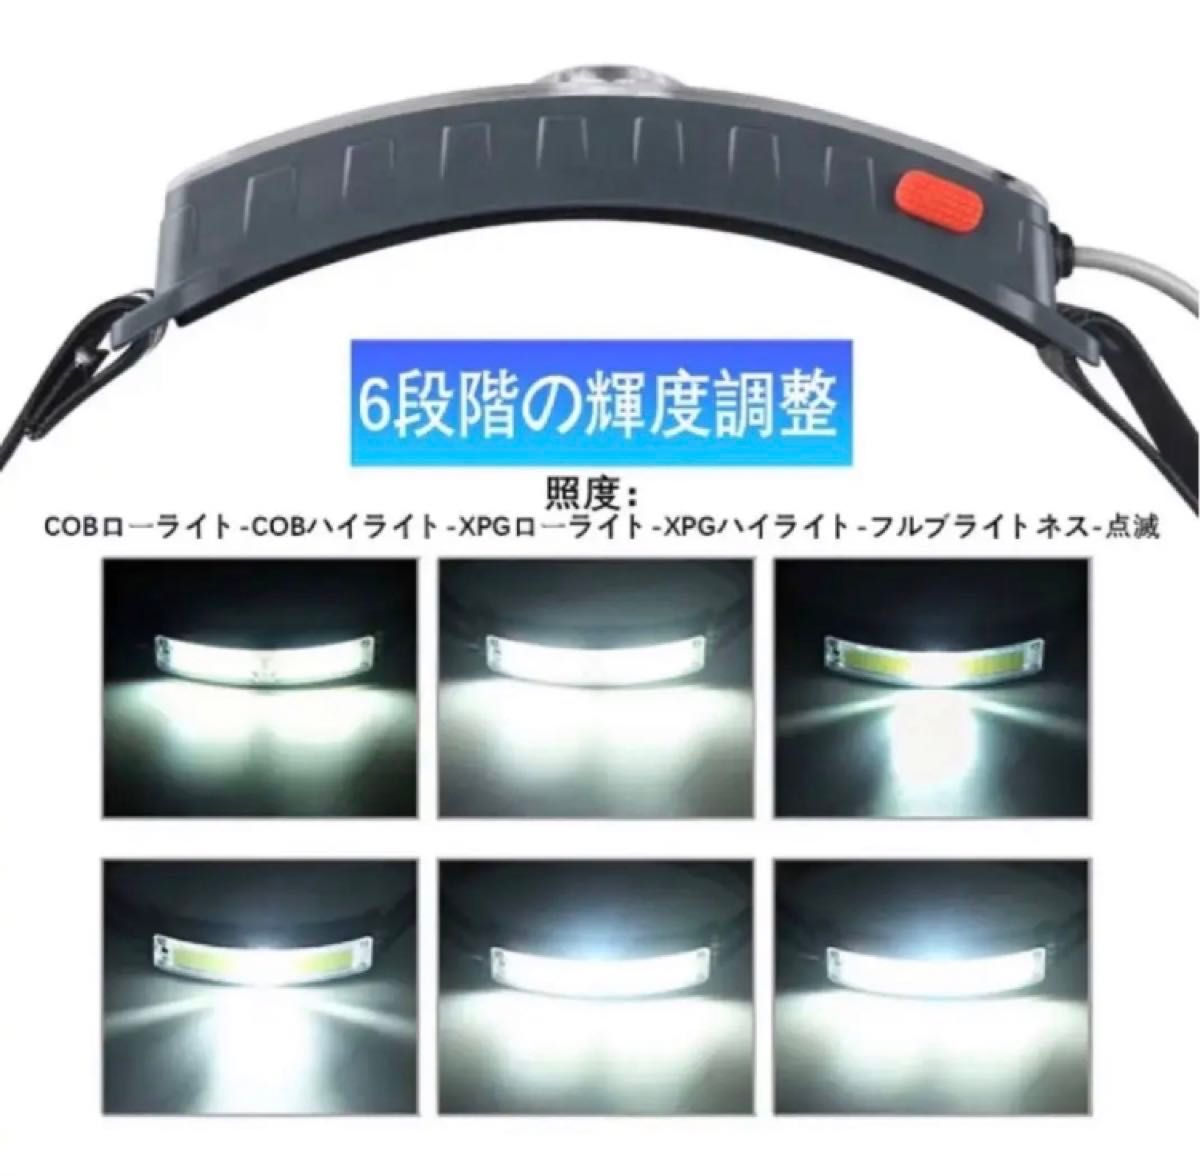 充電式 LED ヘッドライト usb-c充電式【XPG+COB 高輝度】防水 登山 釣り 防災